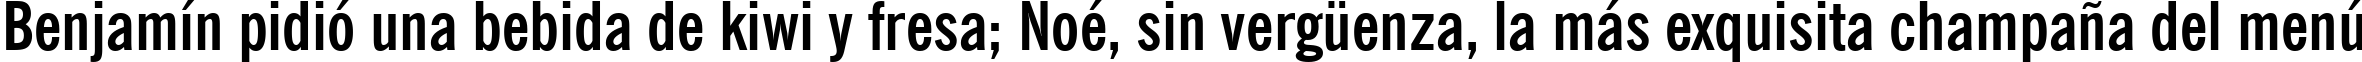 Пример написания шрифтом News Gothic Bold Condensed BT текста на испанском